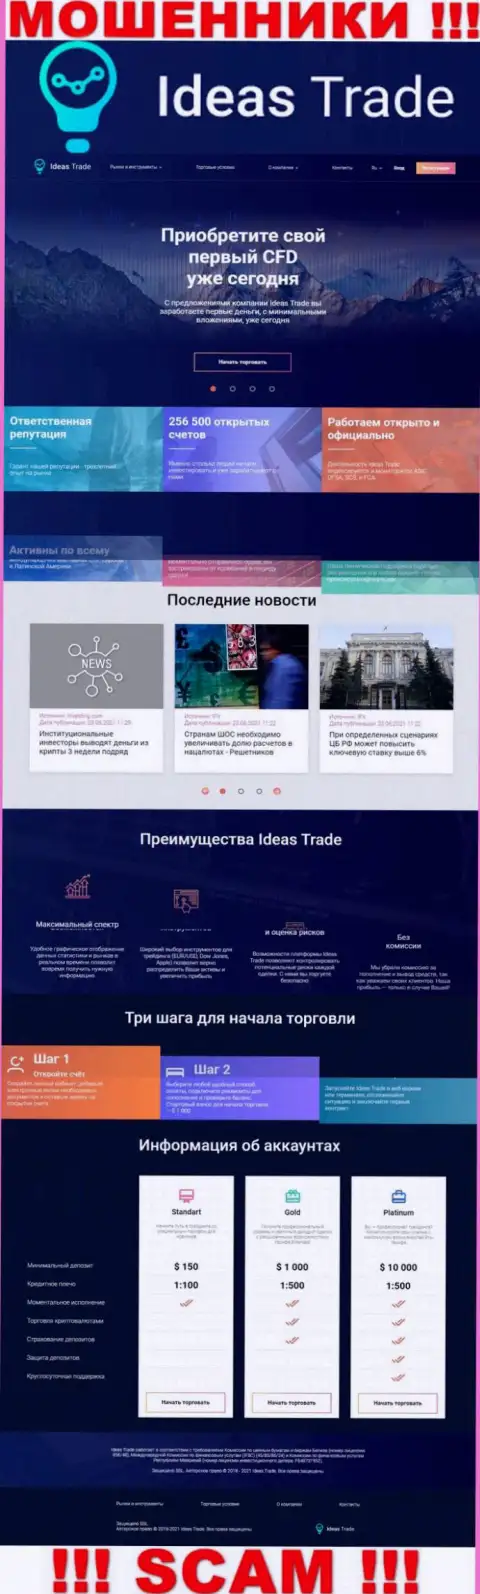 Официальный веб-портал мошенников Идеас Трейд